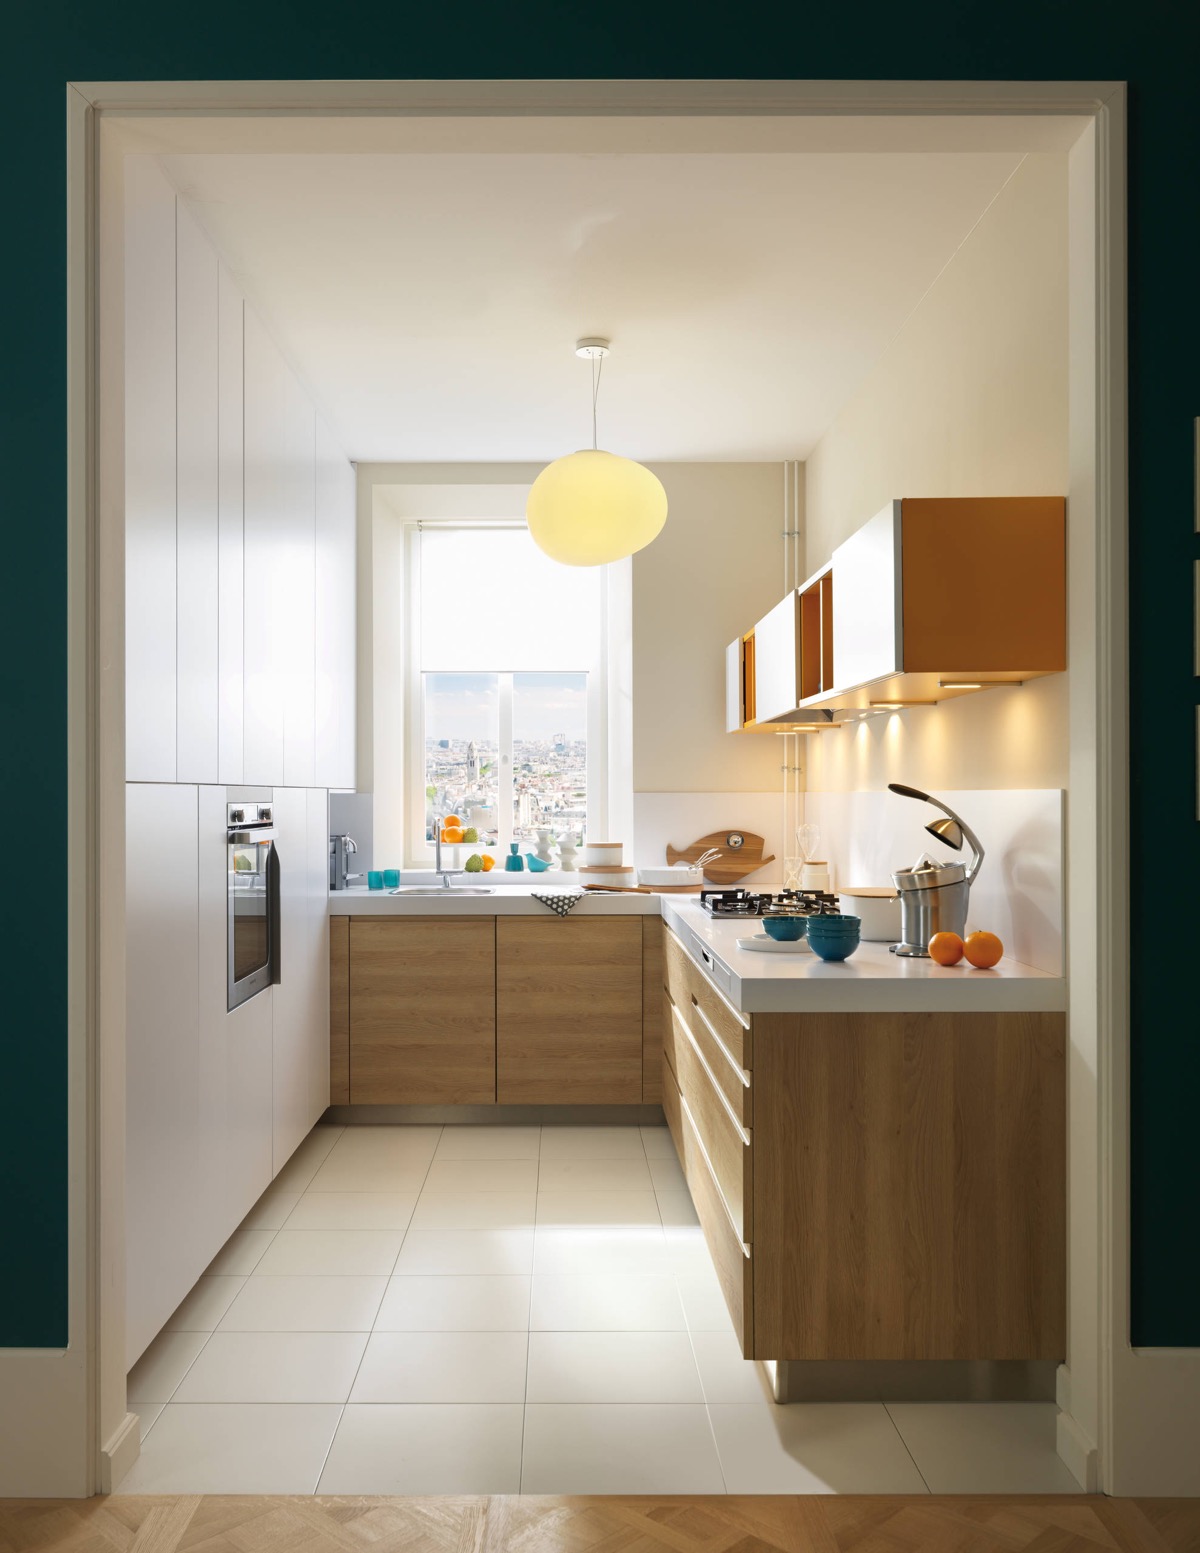 hình ảnh phòng bếp nhỏ thoáng sáng với tủ bếp chữ L gọn đẹp